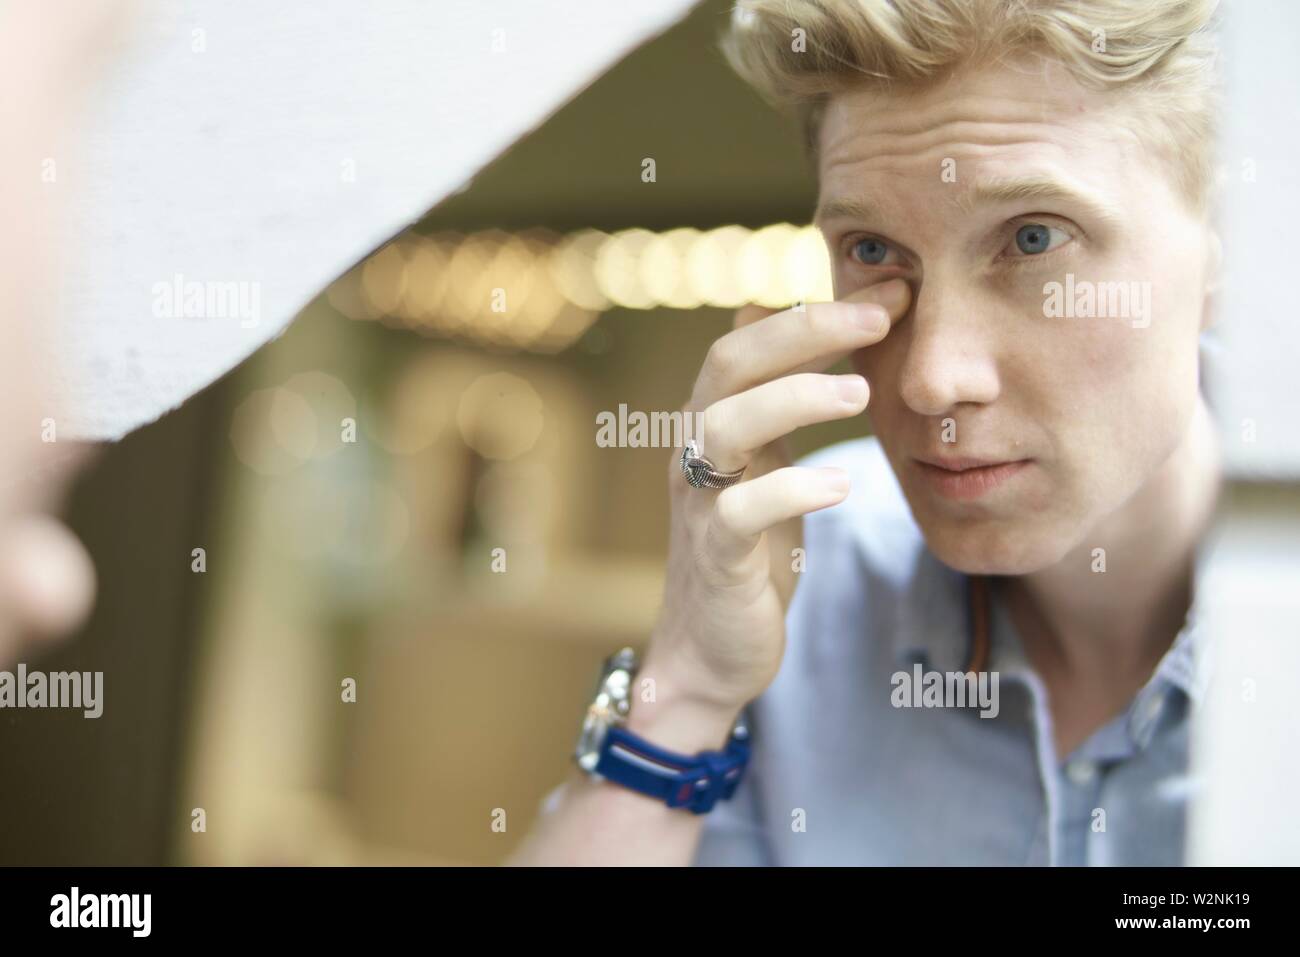 Junge Mann seine Erscheinung im Spiegel überprüfen, Augenringe  Stockfotografie - Alamy